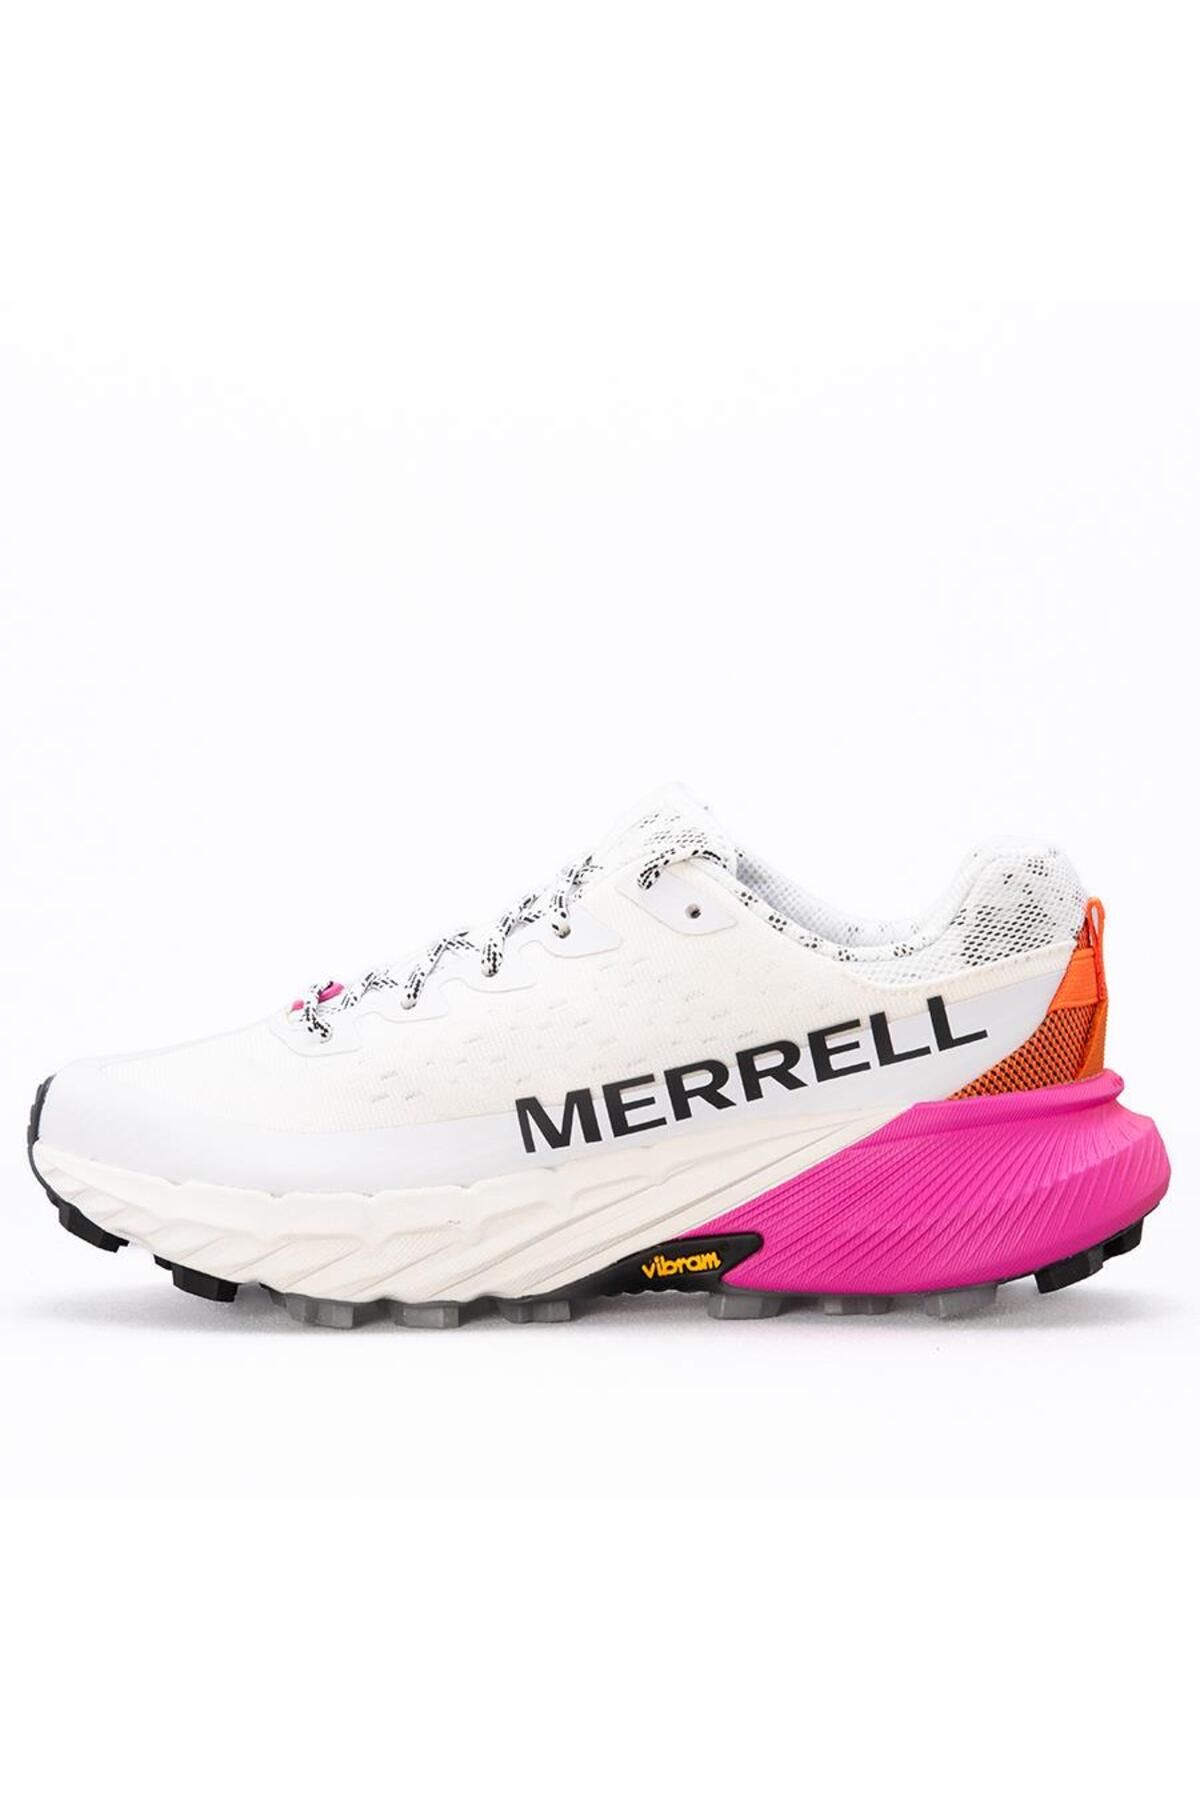 Merrell Agılıty Peak 5 Gtx Kadın Spor Ayakkabı J068234